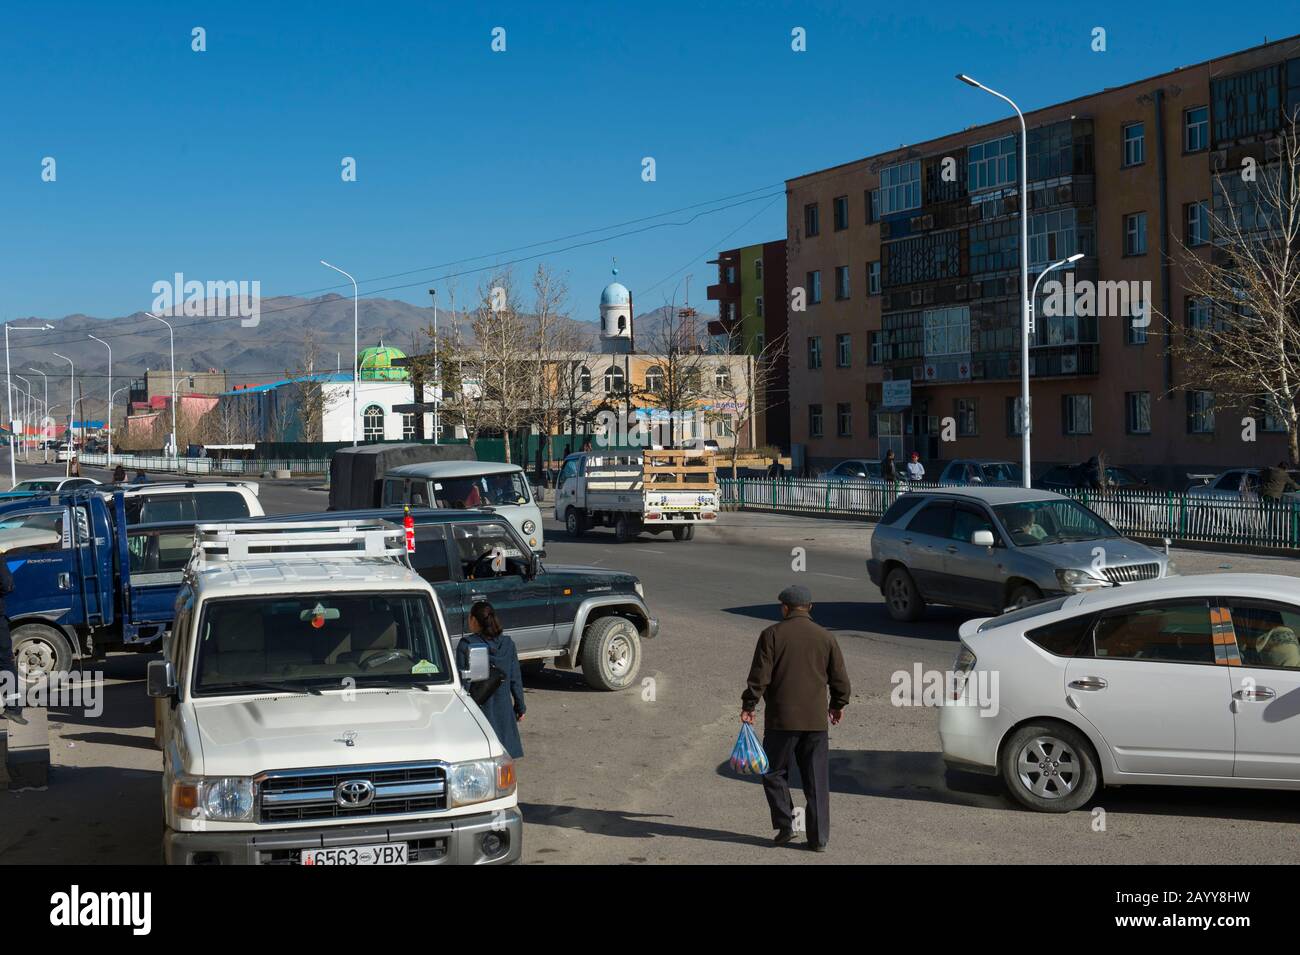 Scène de rue au centre de la ville d'Ulgii (Ölgii) dans la province de Bayan-Ulgii dans l'ouest de la Mongolie. Banque D'Images